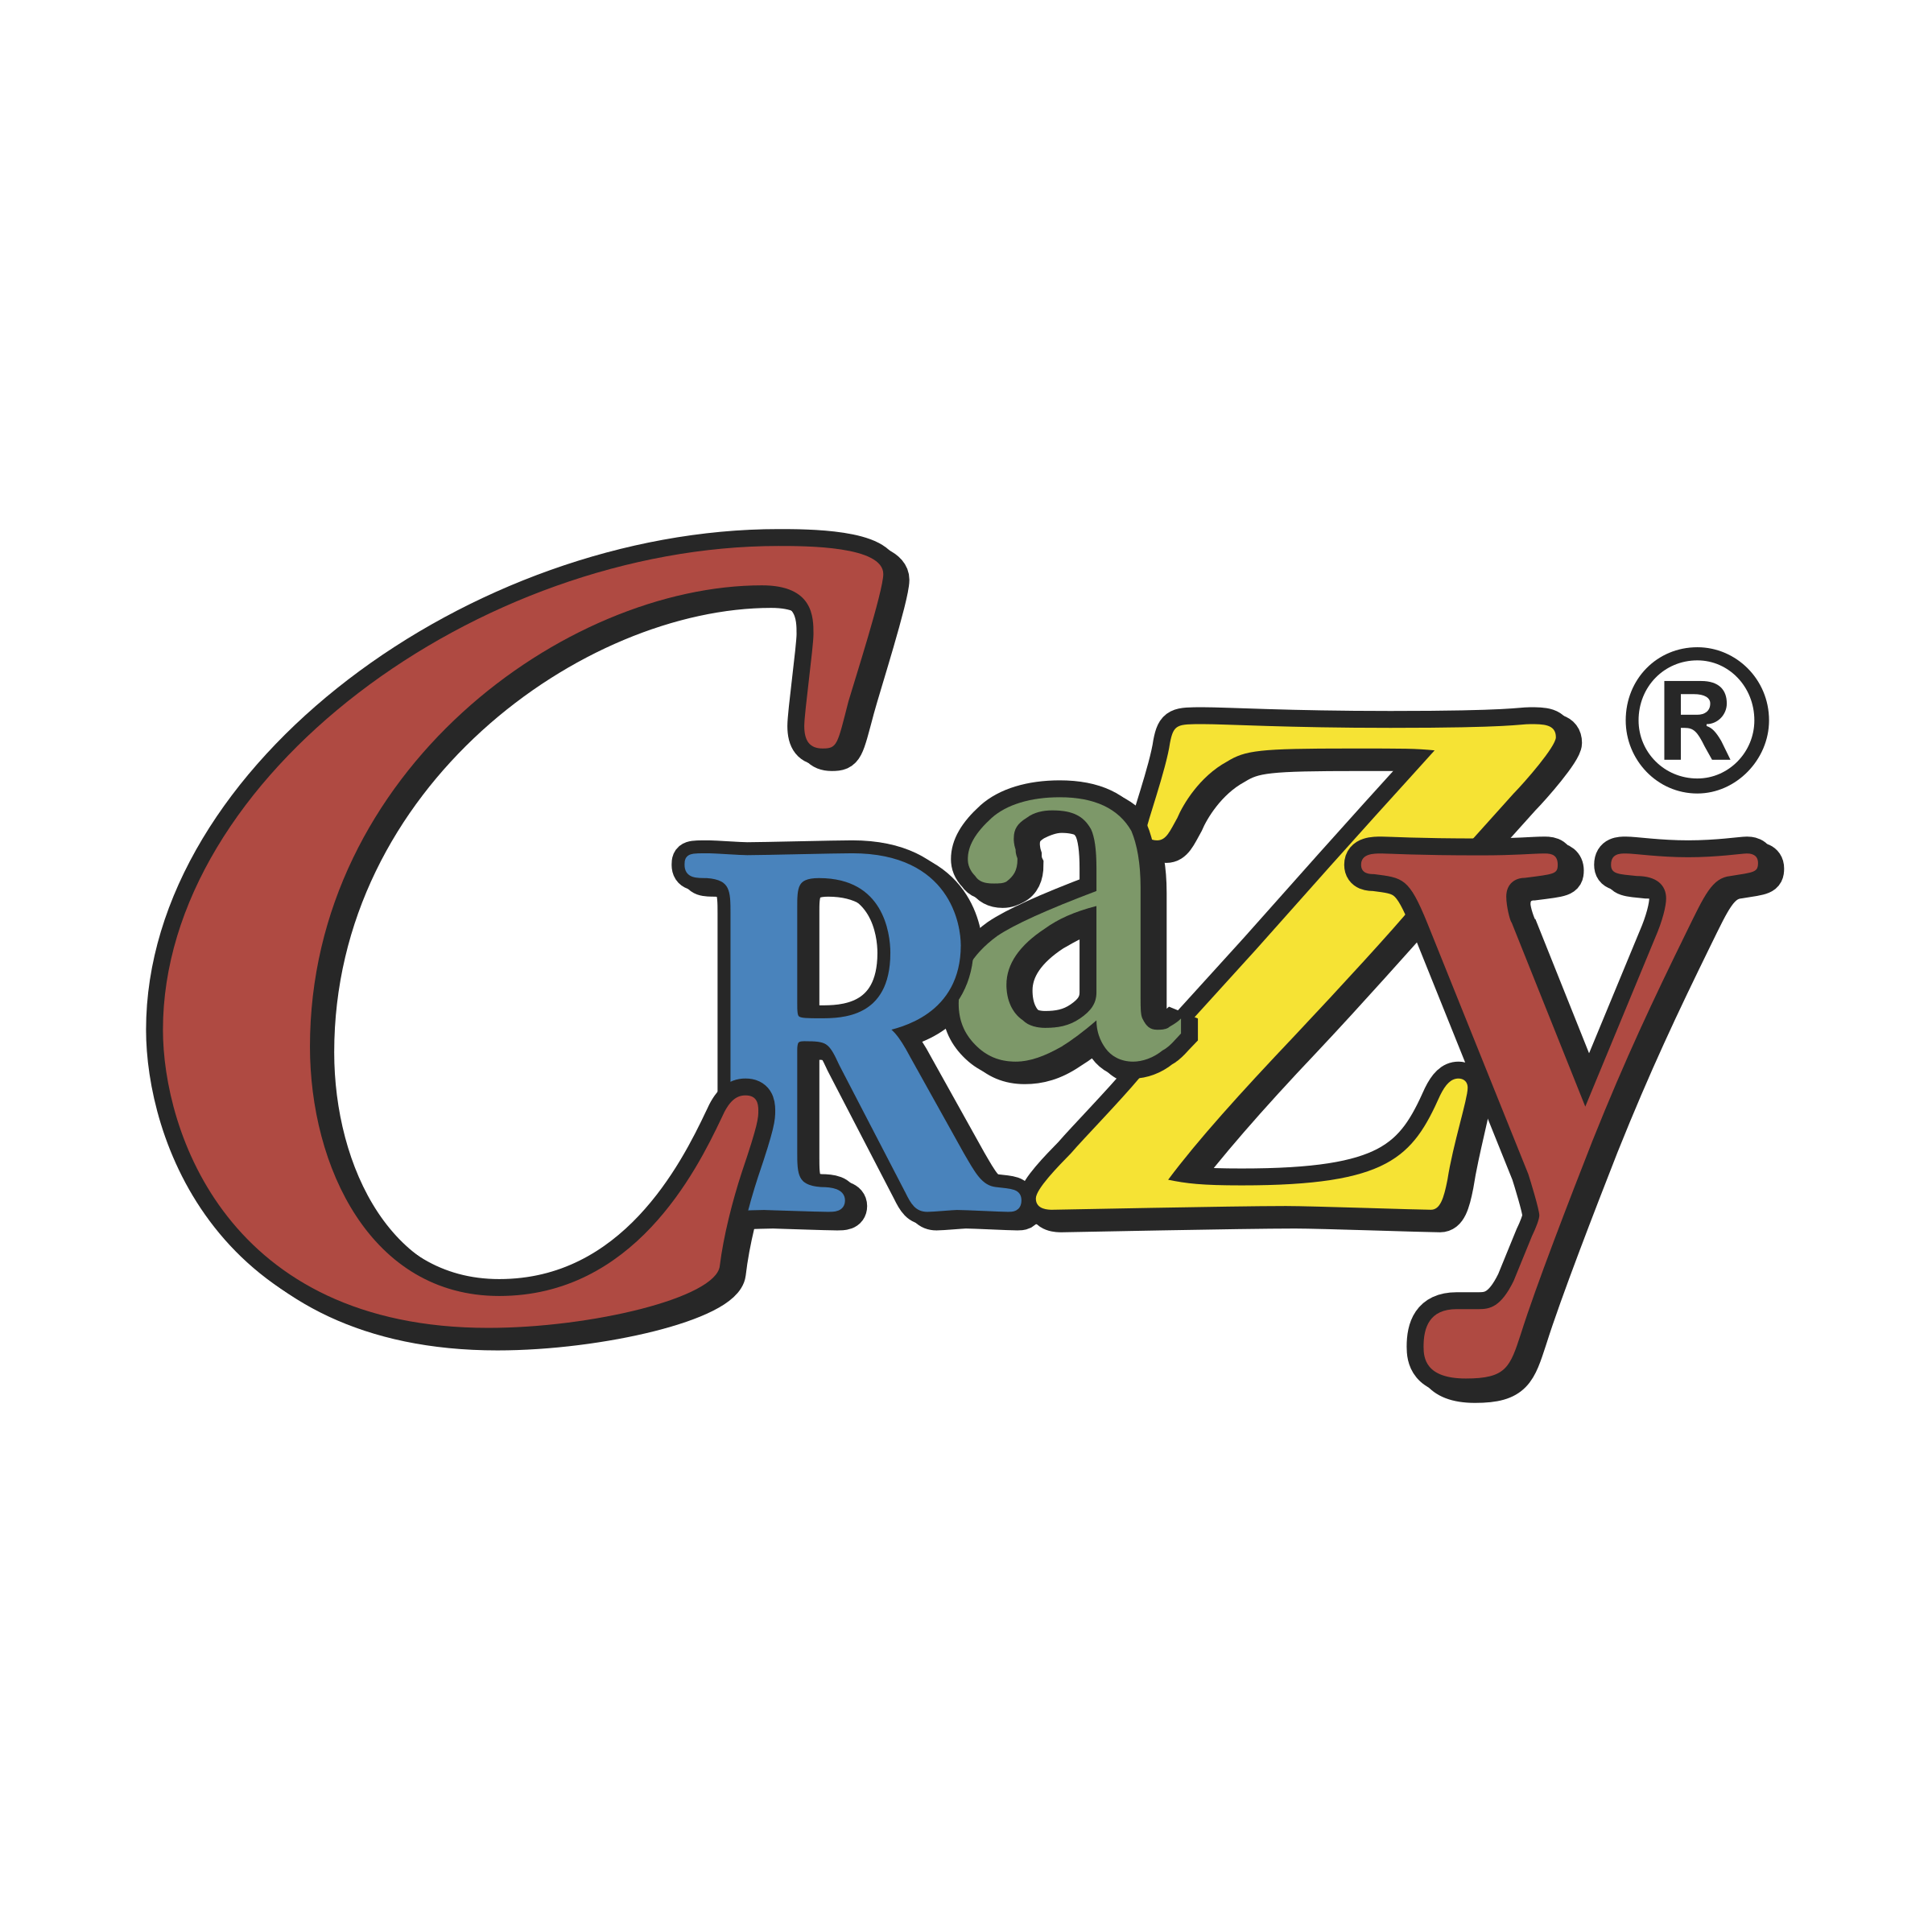 Crazy Logo - Crazy Logo PNG Transparent & SVG Vector - Freebie Supply